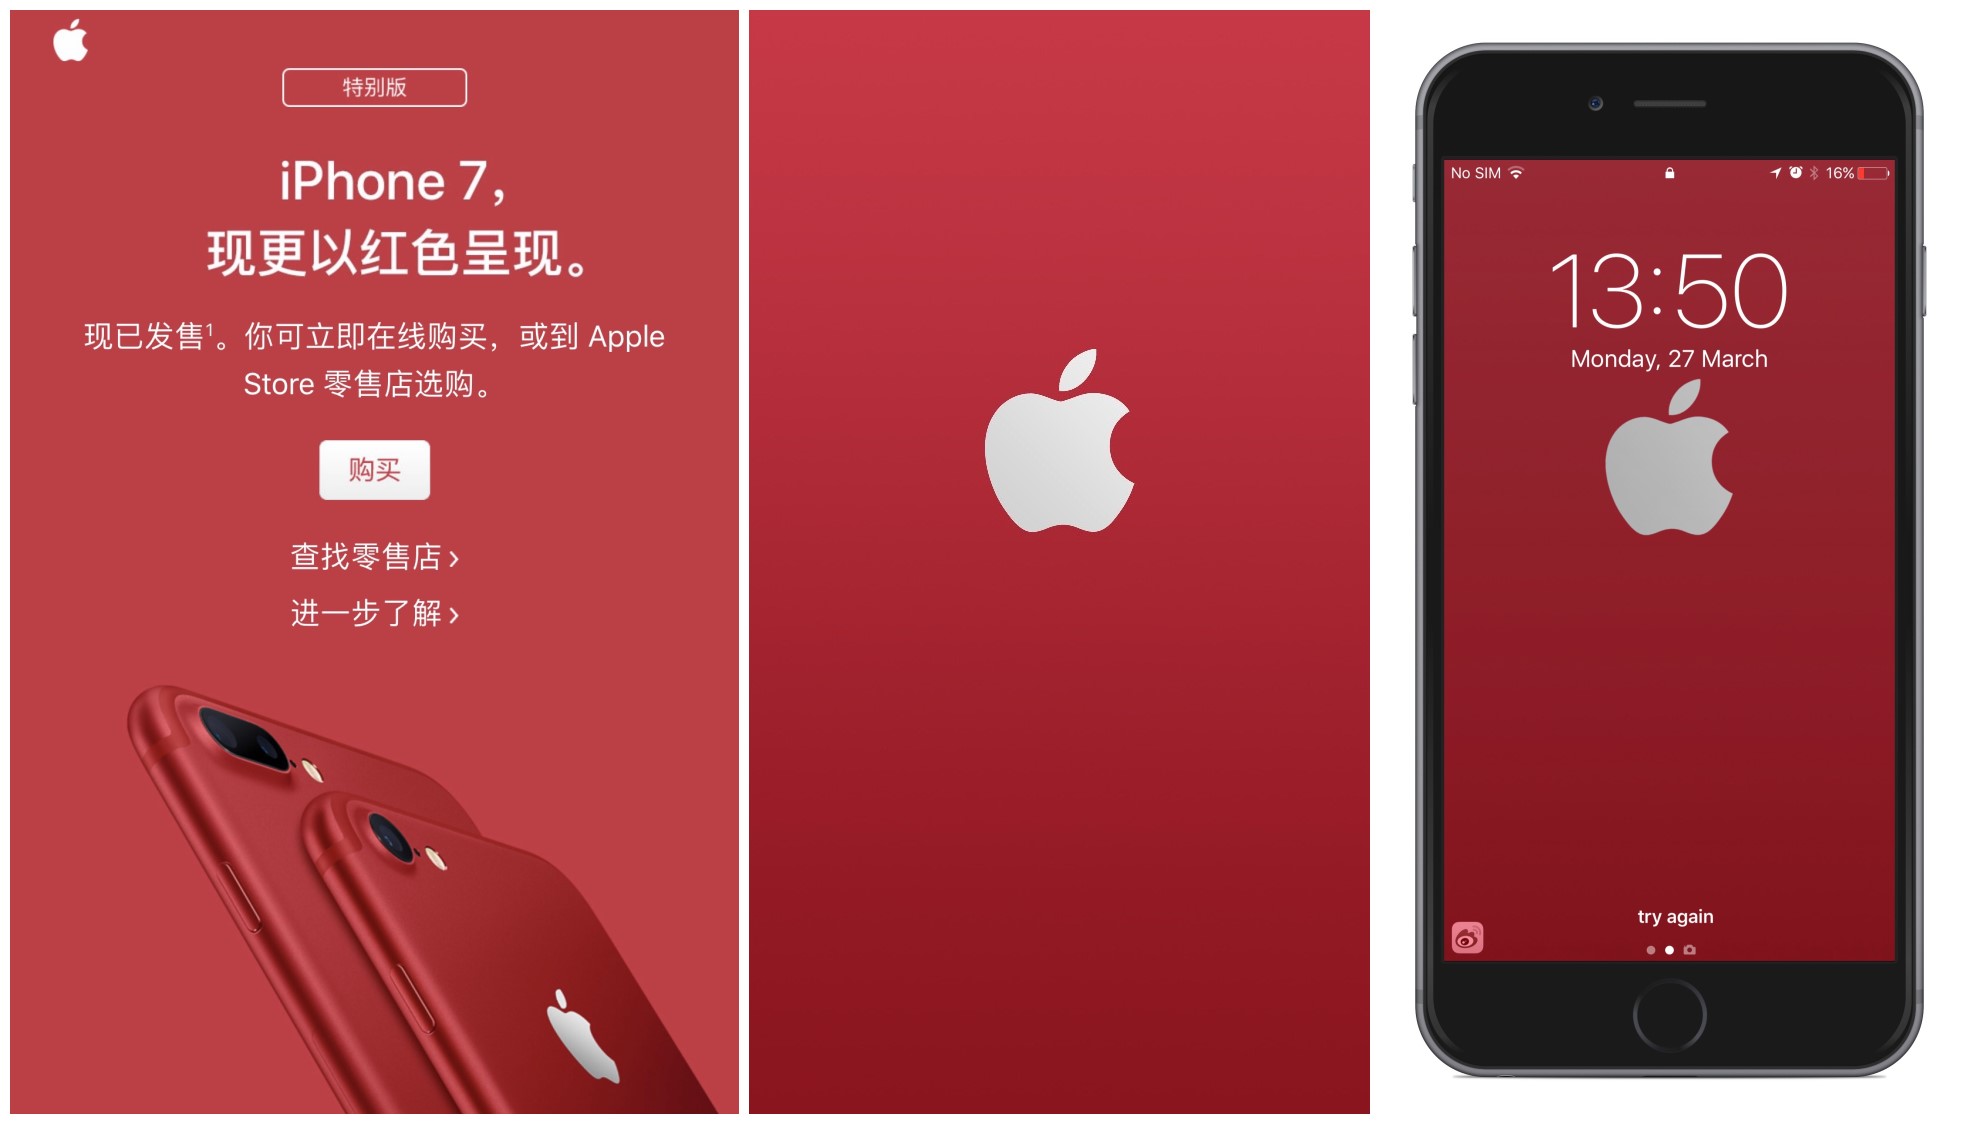 iphone 7中国红壁纸(分辨率2208*1242)